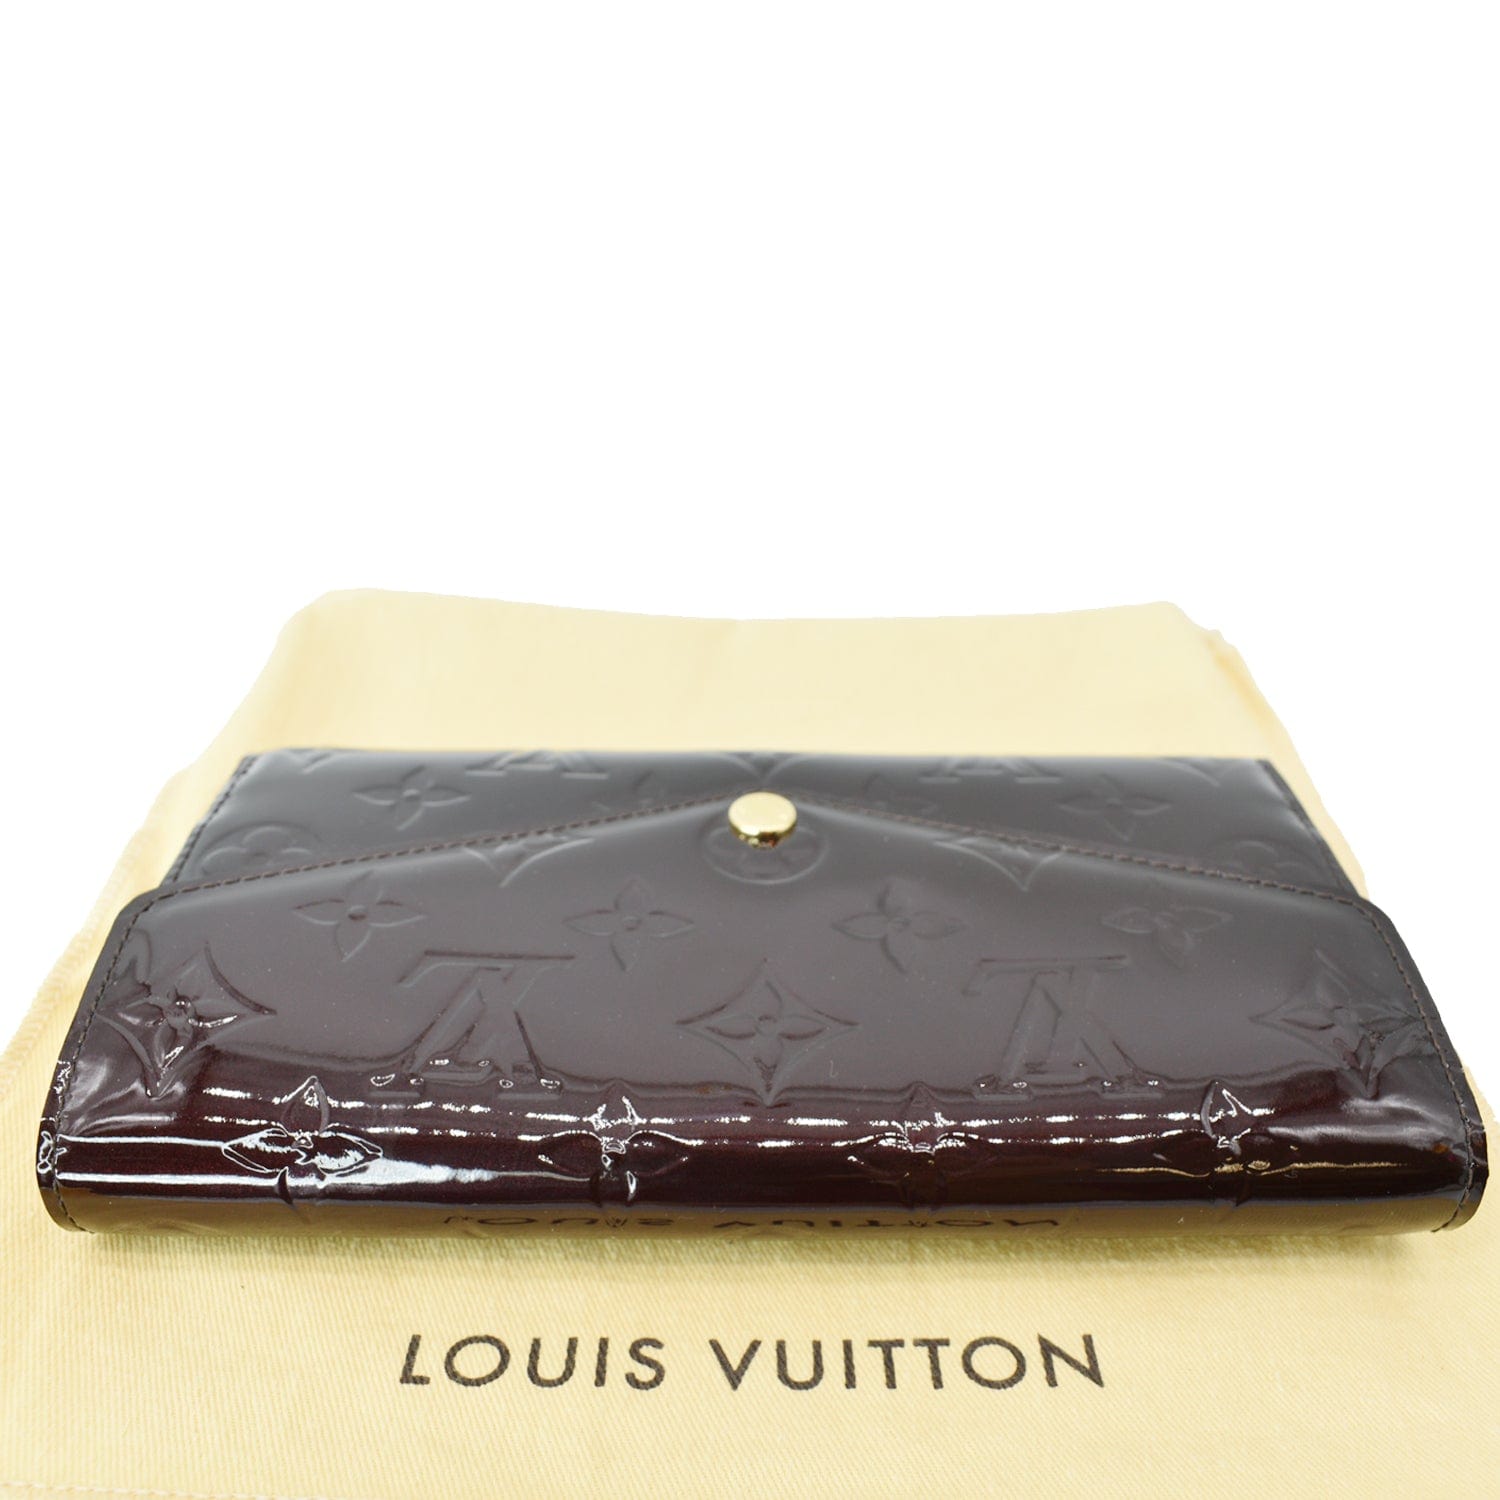 Wear & Tear: Louis Vuitton Vernis Sarah Wallet in Violette 